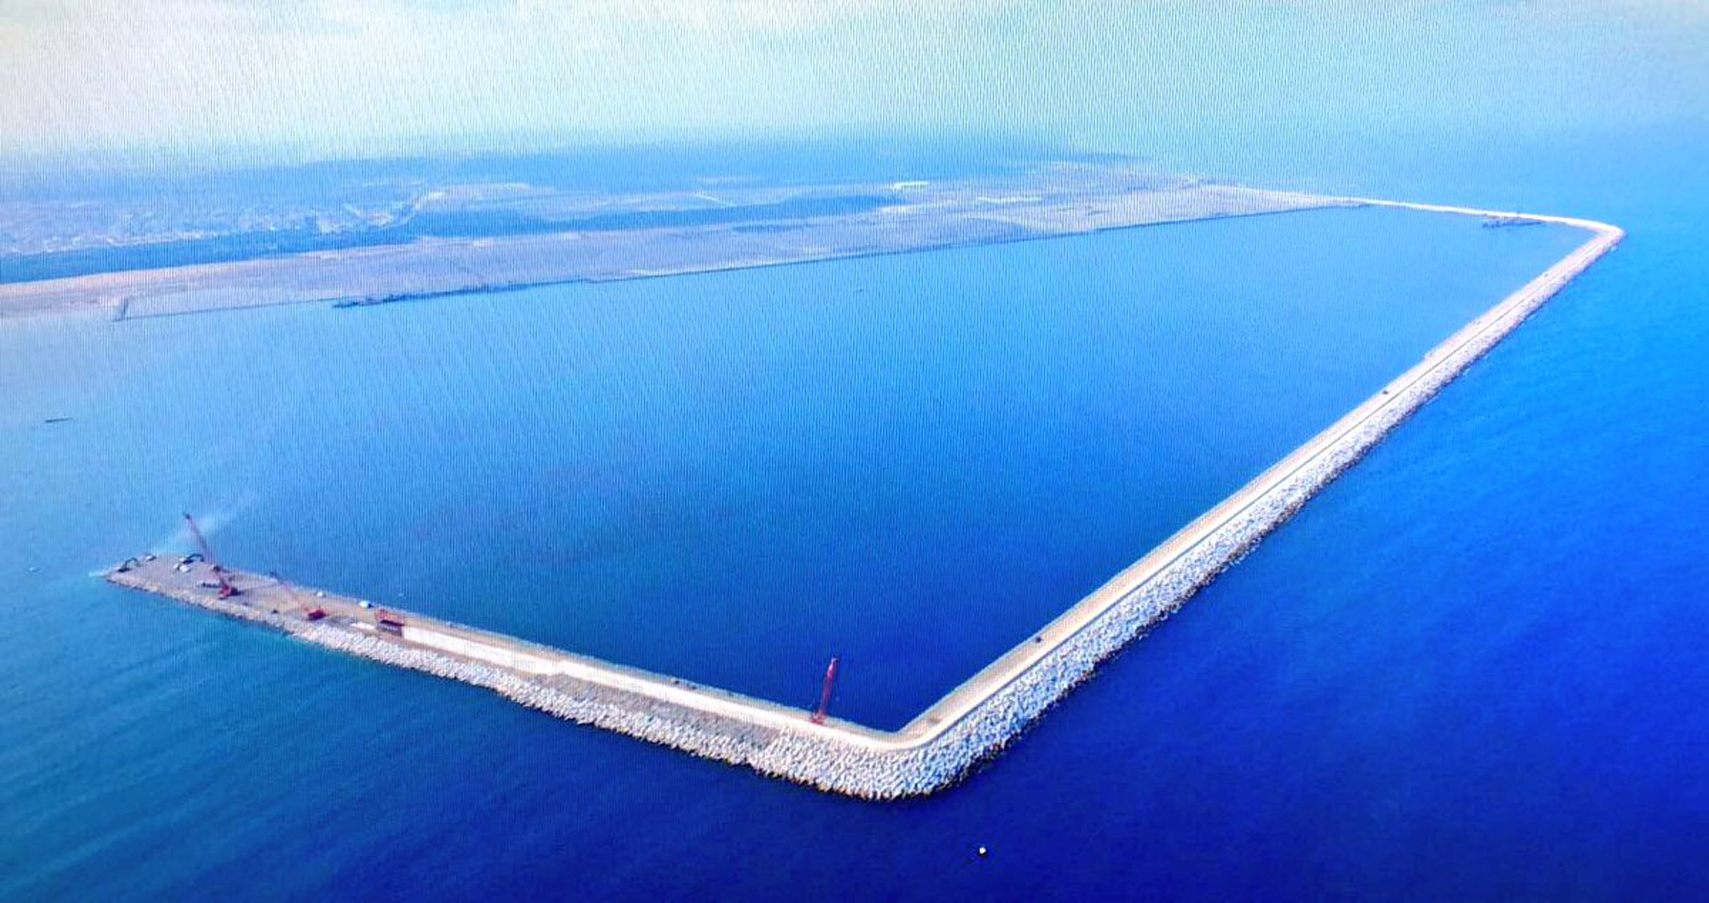 Construimos uno de los #Puertos más importantes del continente, El #NuevoPuertoDeVeracruz, el más importante de los últimos 100 años en el país.